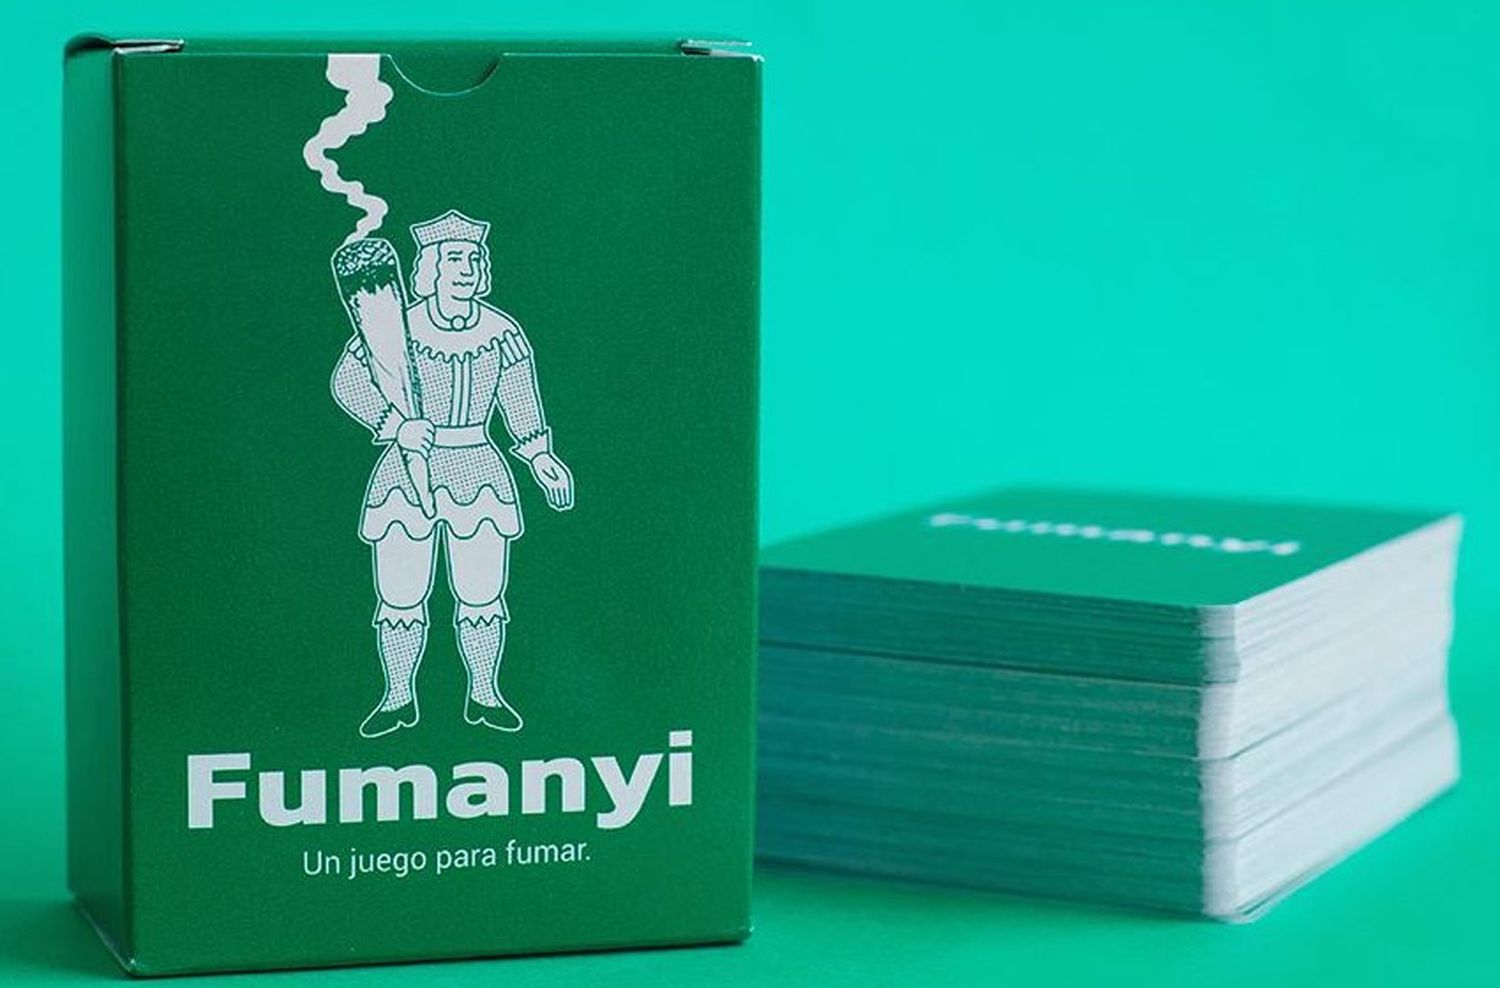 Un grupo de jóvenes creó «Fumanyi», un juego de cartas para fumar marihuana entre amigos